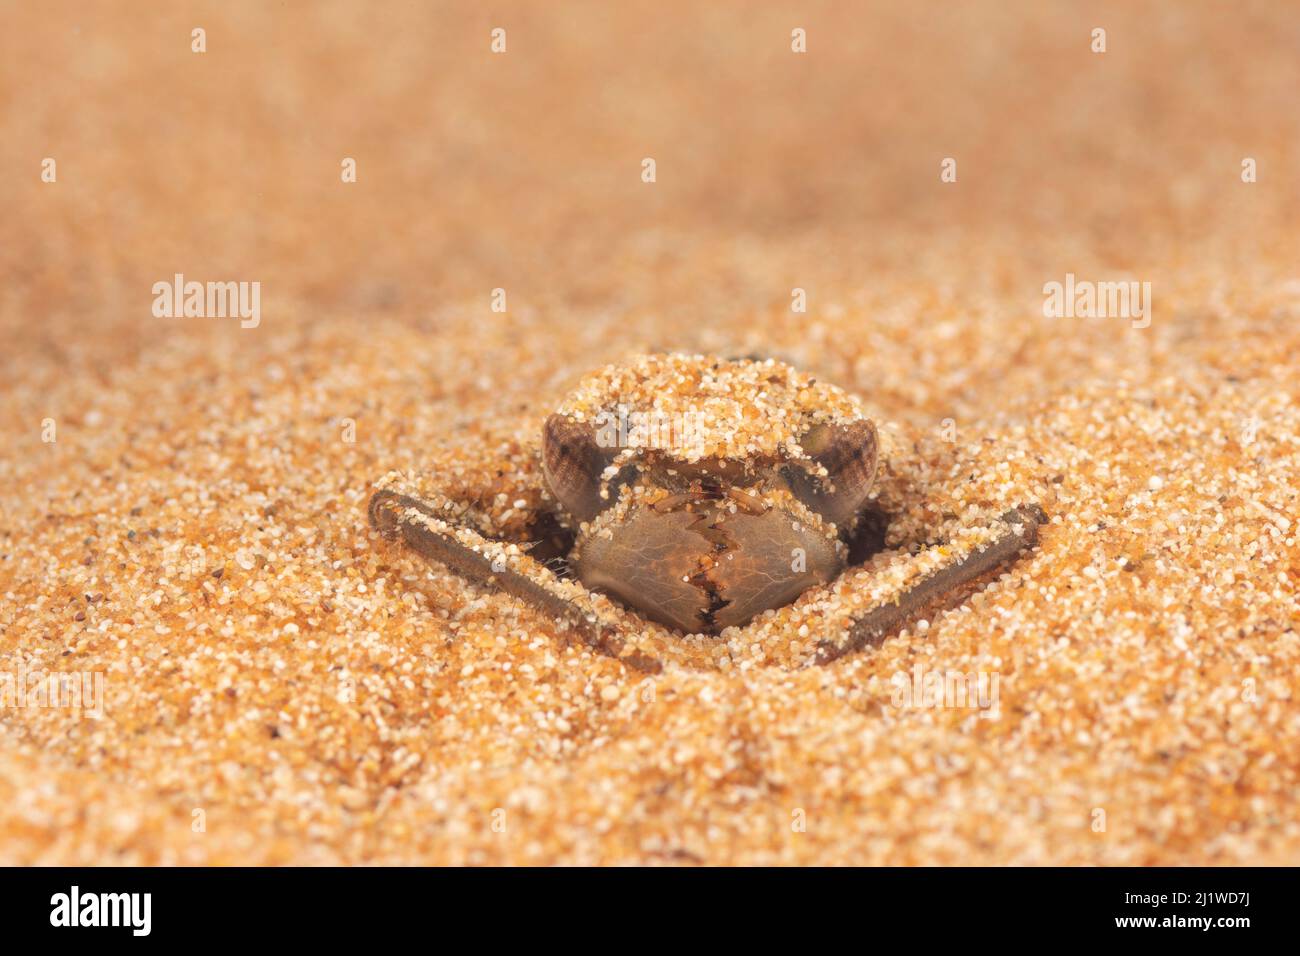 Spiketail libellule nymph (Cordulegaster boltonii) se cachant dans le sable, Europe, avril, conditions contrôlées Banque D'Images